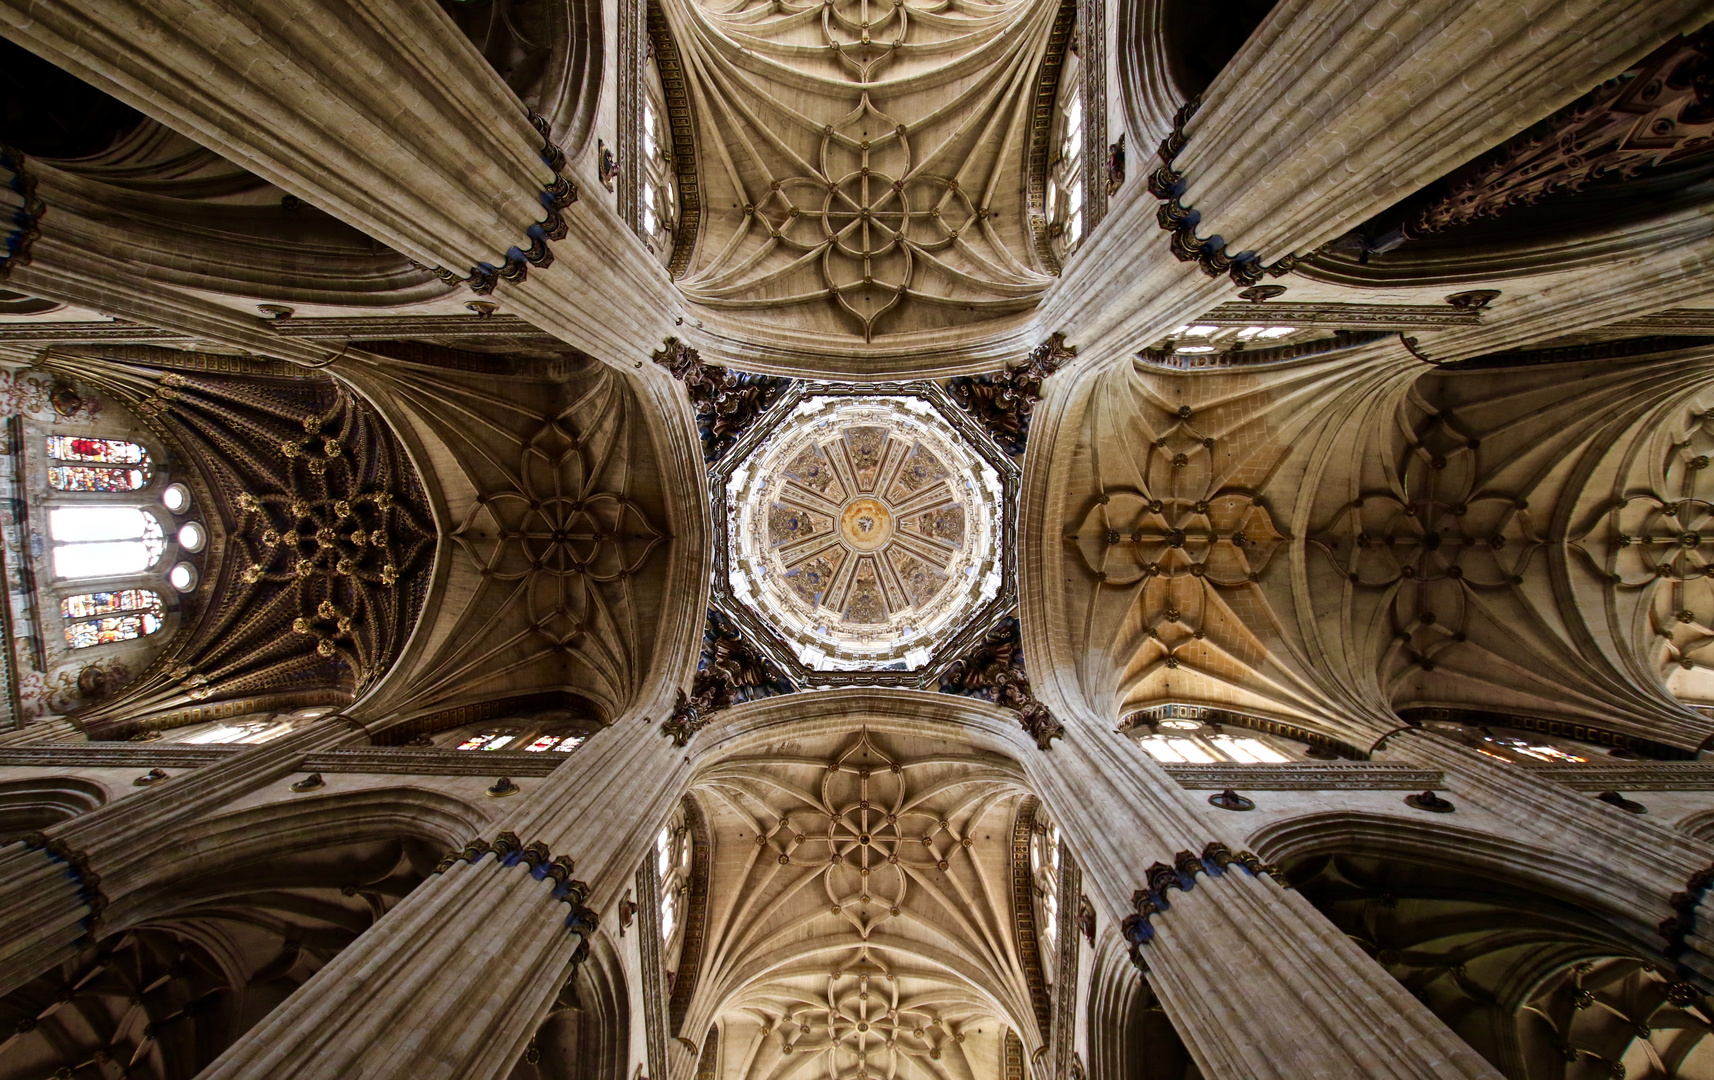 Catedral Nueva de Salamanca